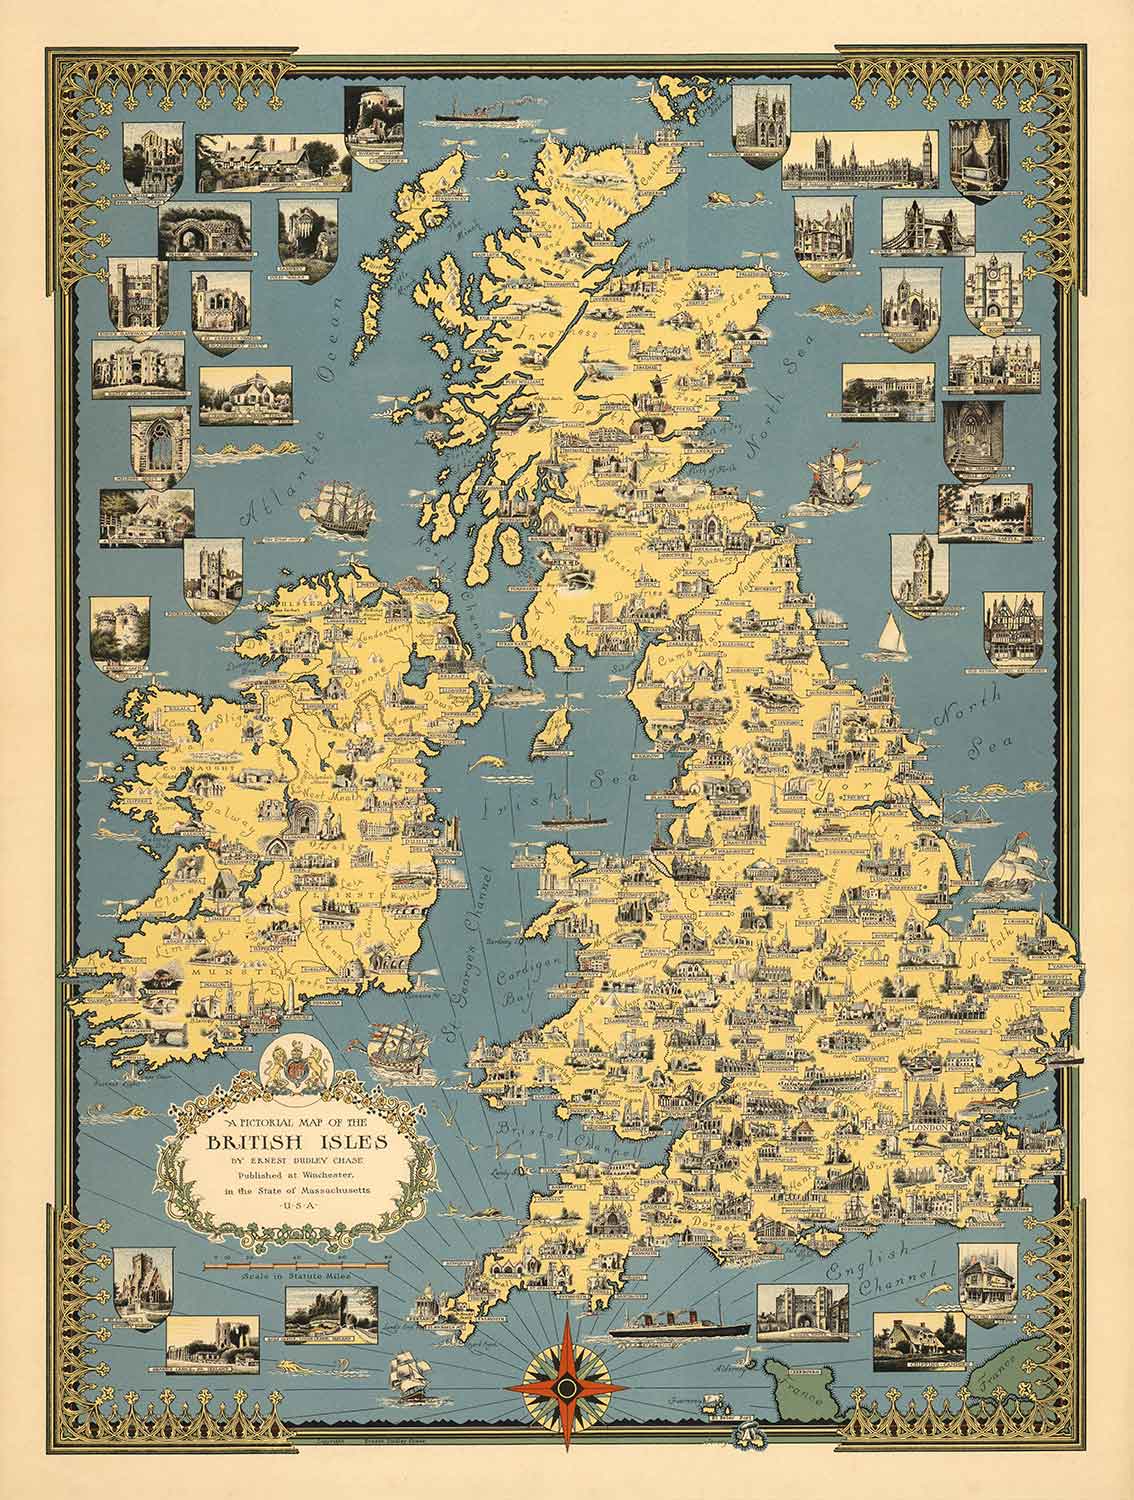 Ancienne carte picturale des îles britanniques, 1939 par Ernest Dudley Chase - Points de repère illustrés, villes, cinq nations